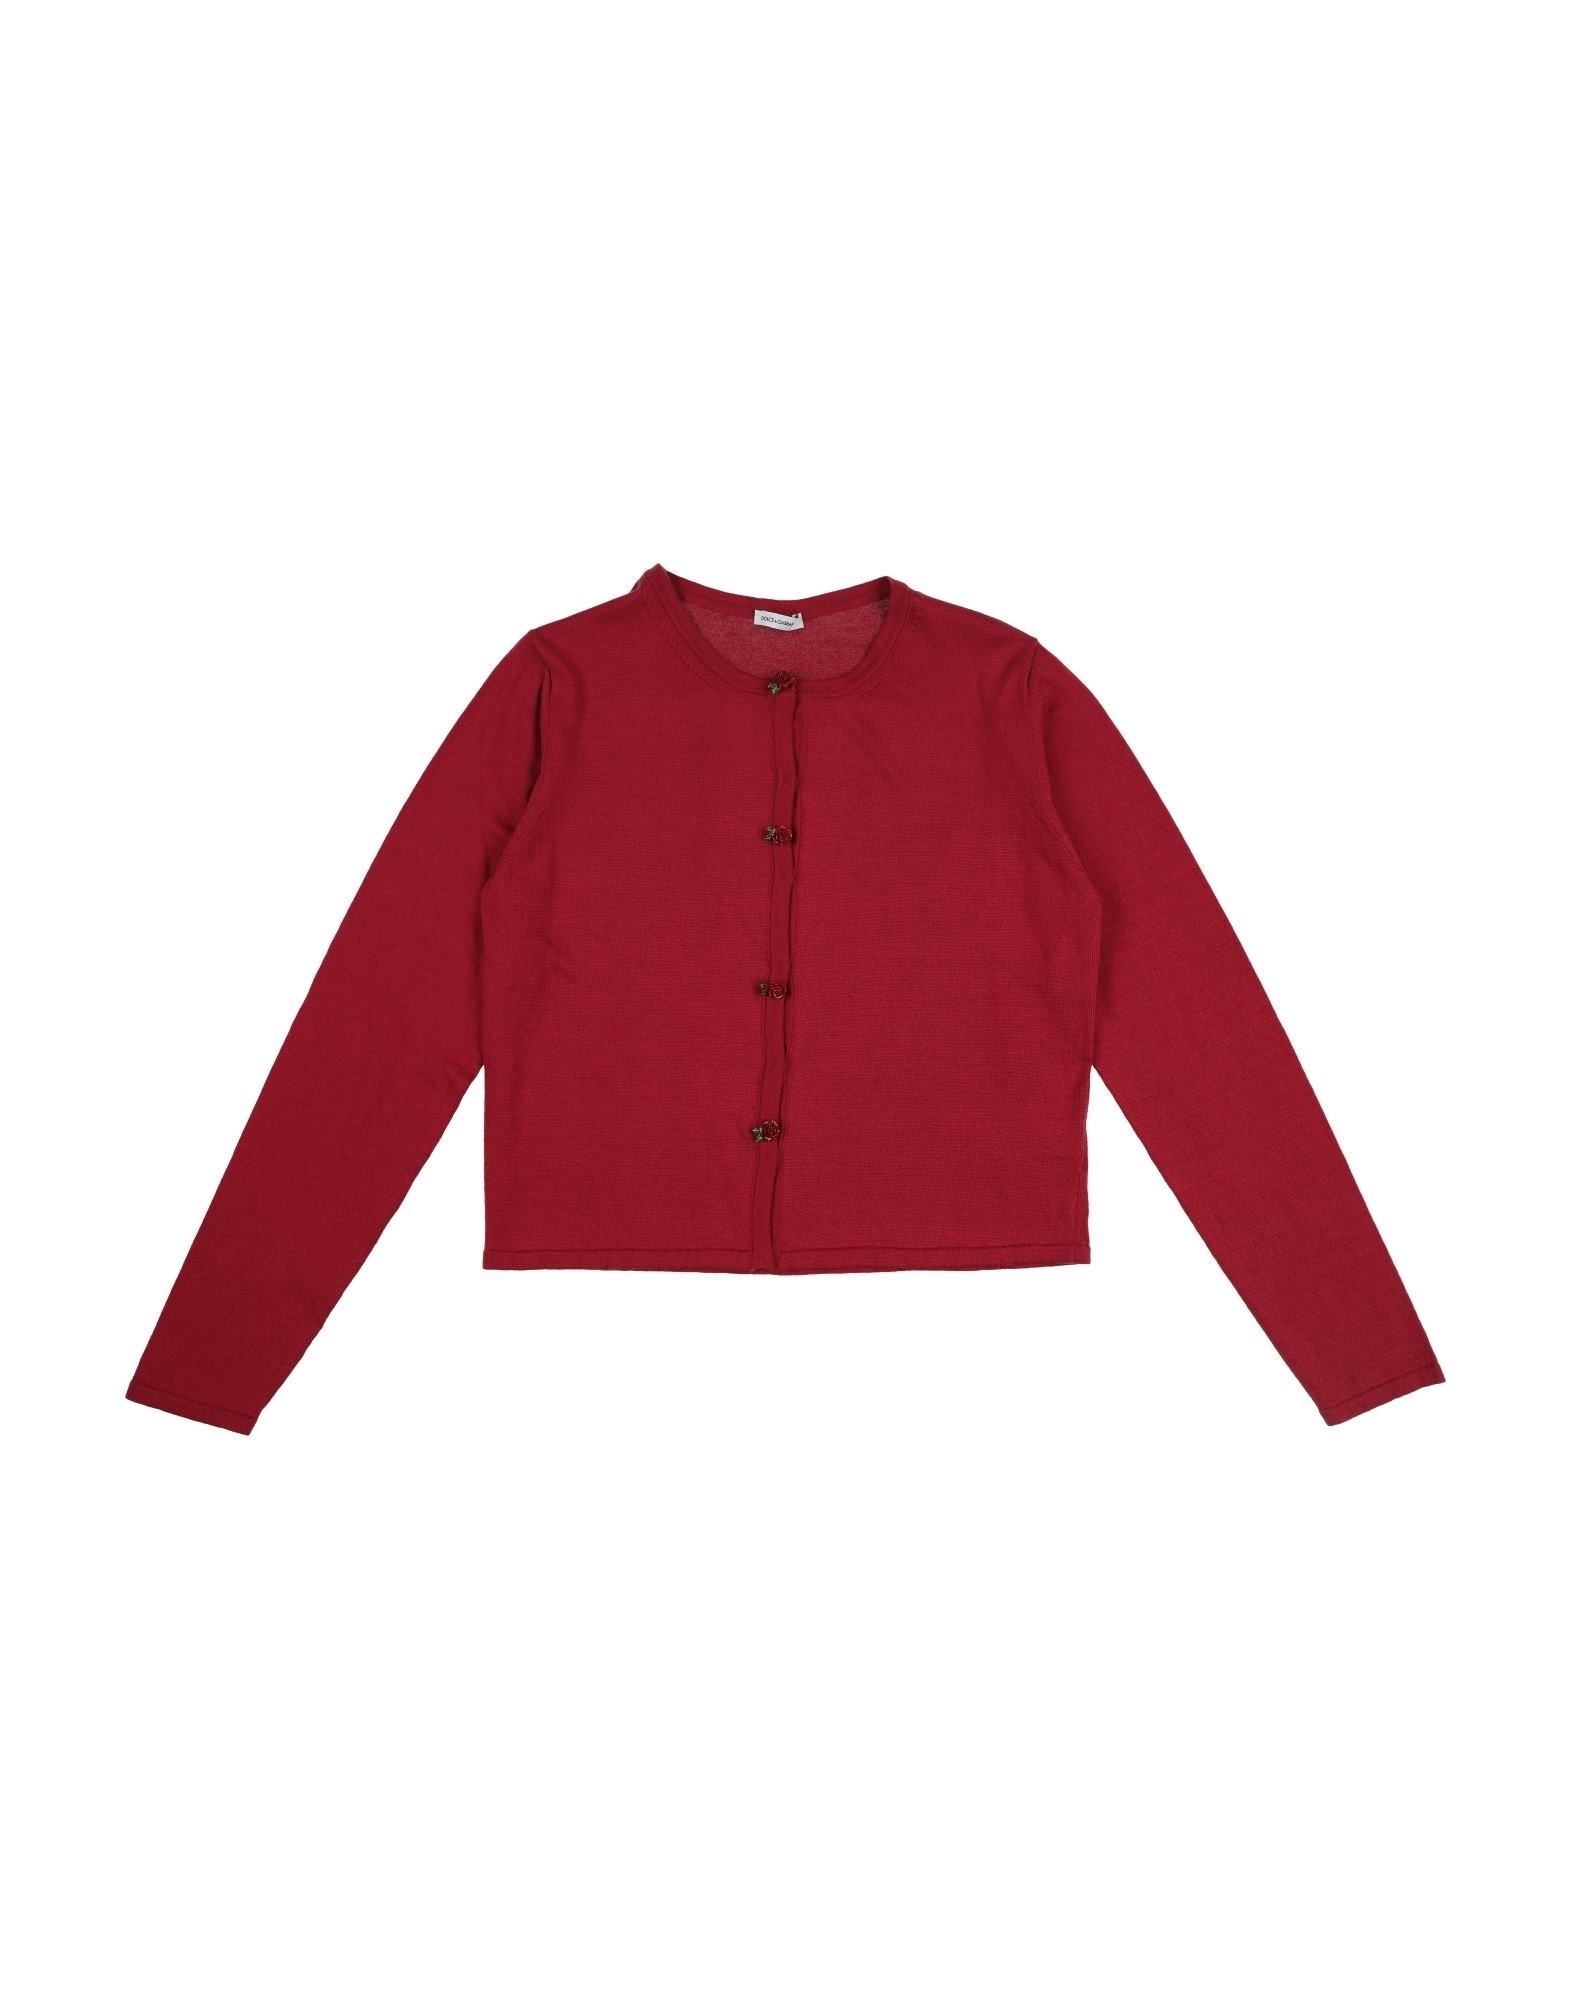 Dolce & Gabbana Kids'  Toddler Girl Cardigan Red Size 7 Cotton